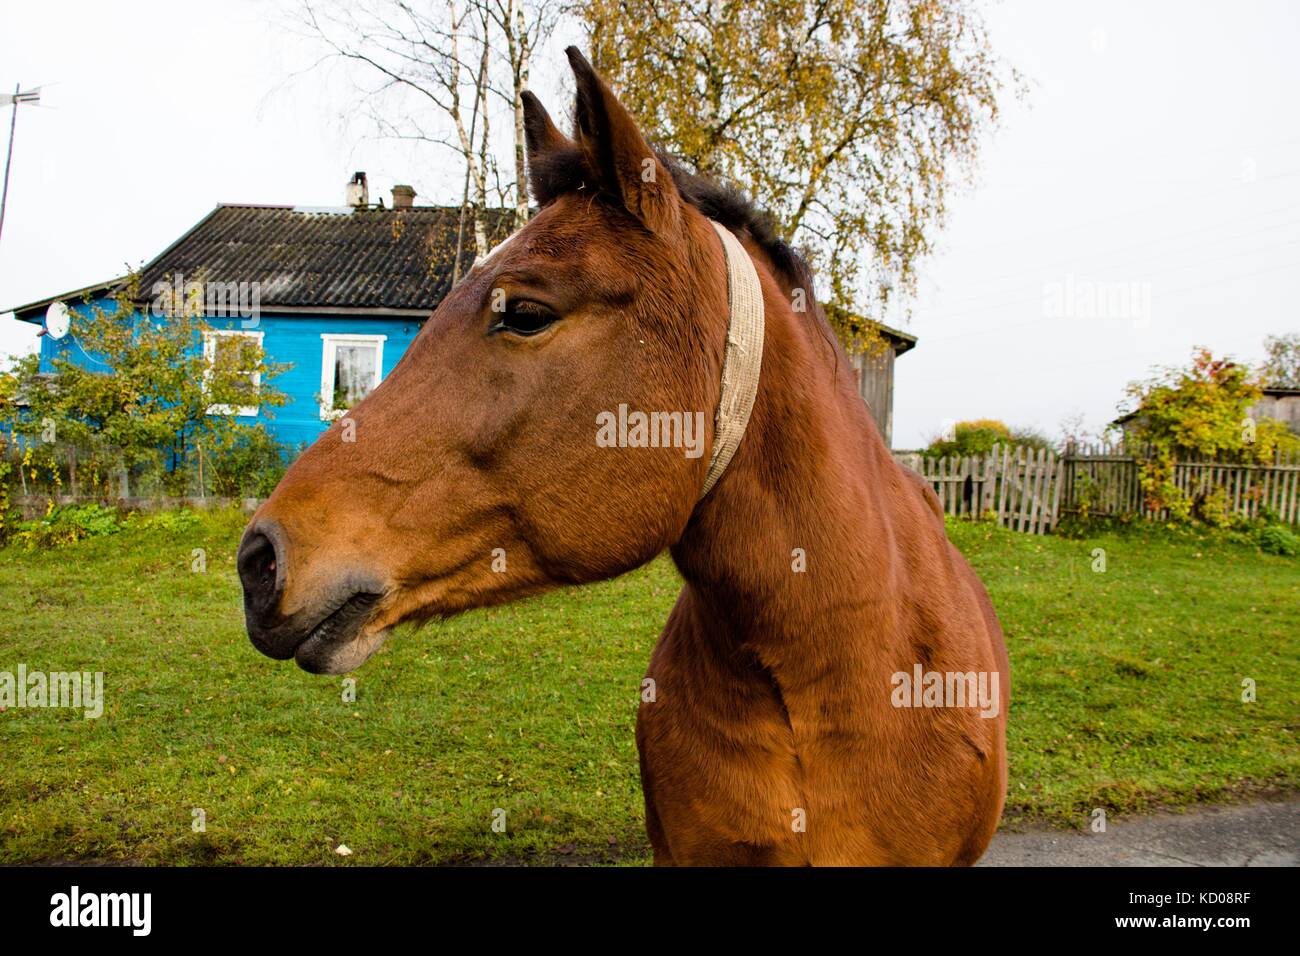 Un bel cavallo di tonalità marrone su una strada di campagna in una fattoria girando la testa in profilo Foto Stock